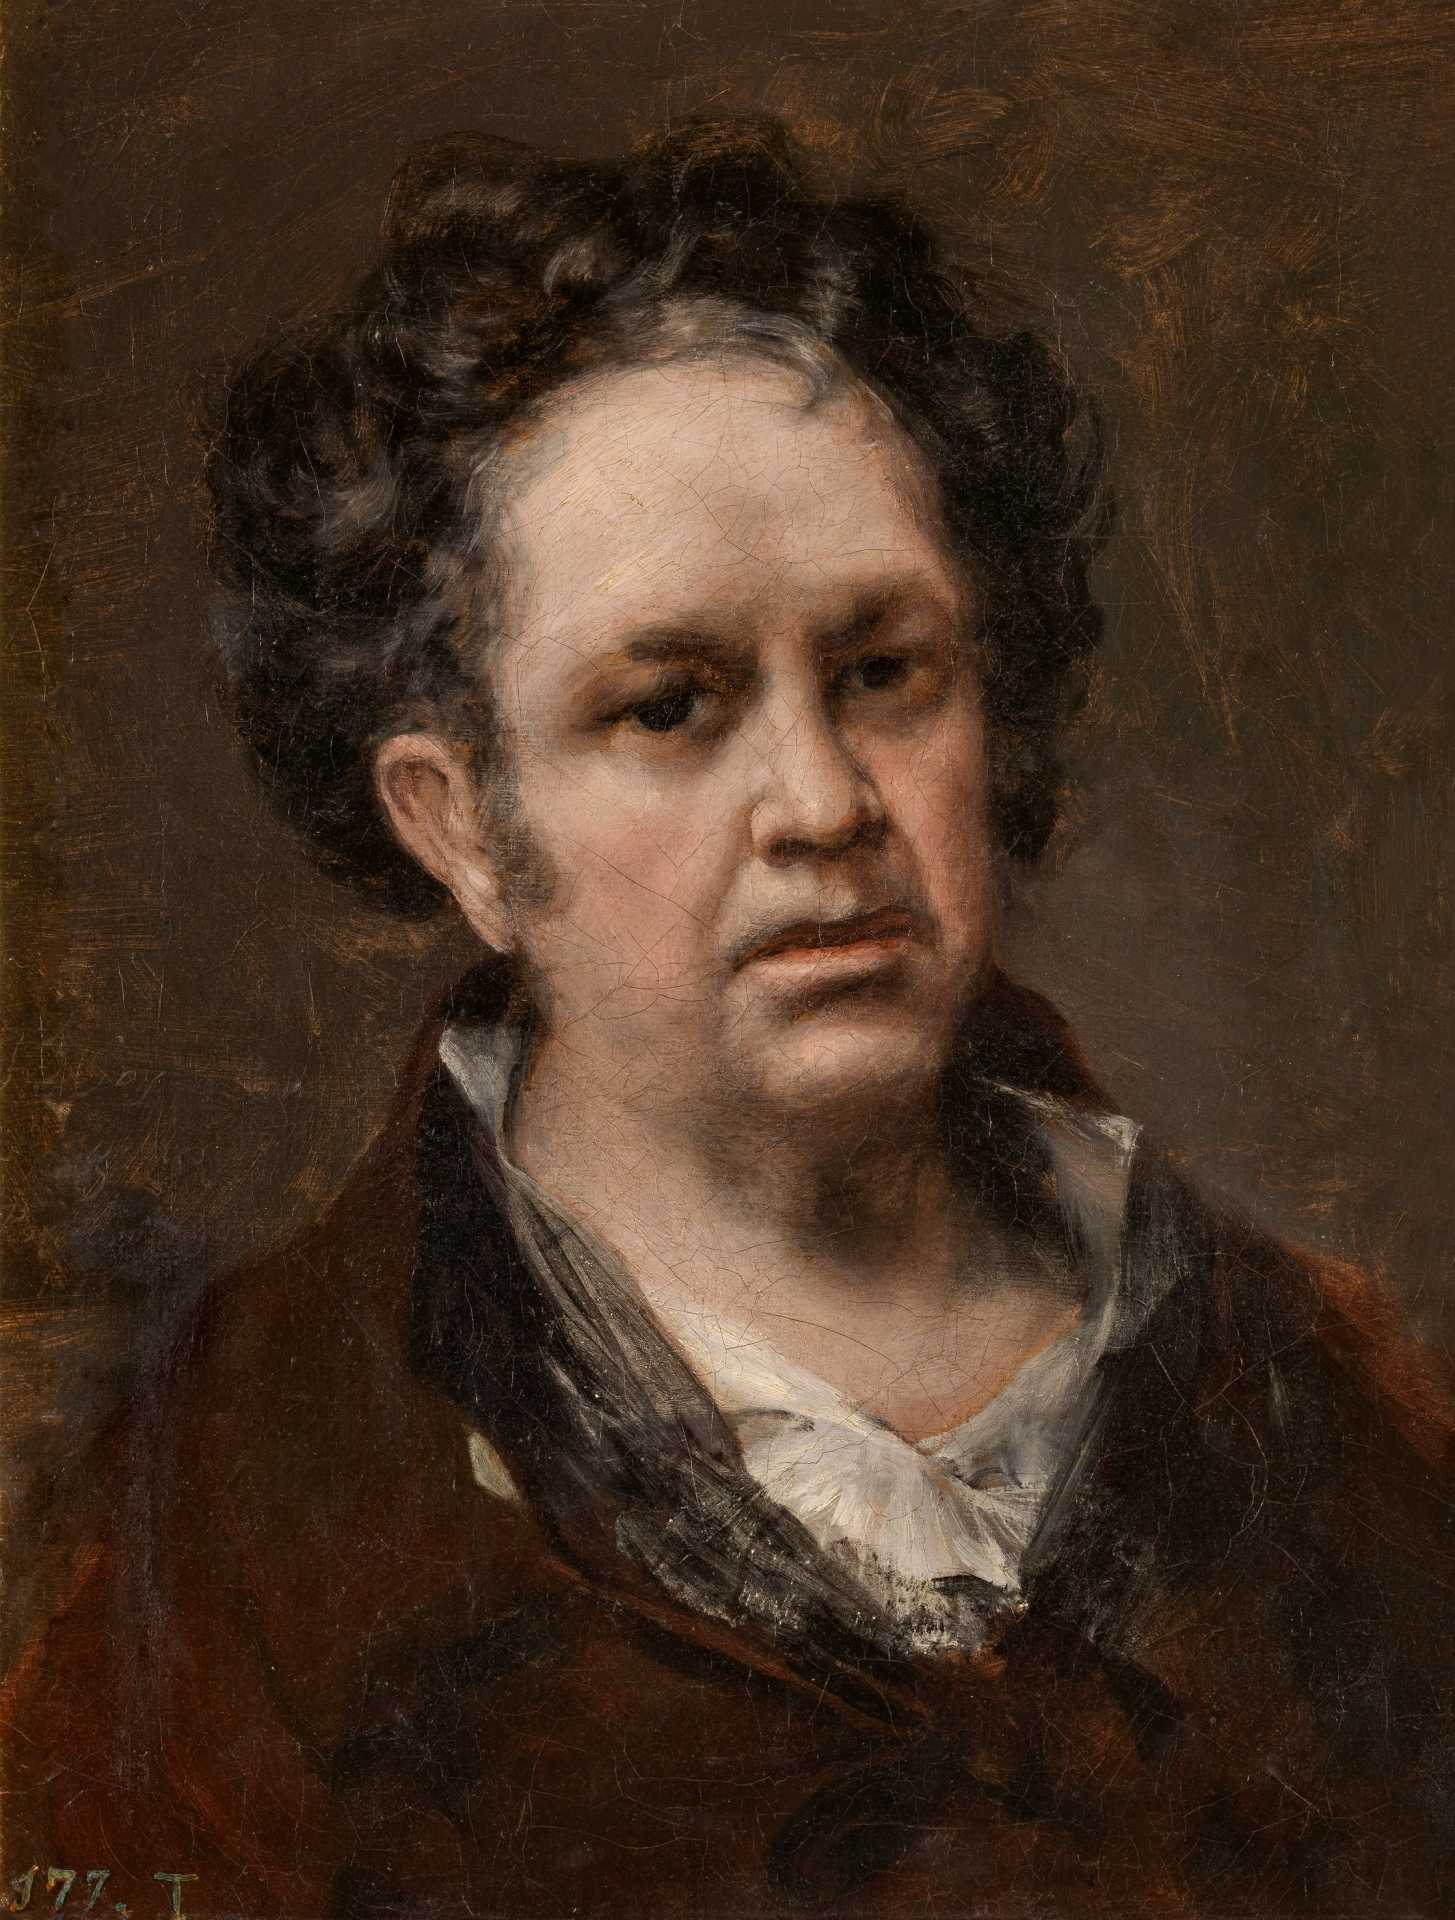 Find out more about Francisco de Goya - Self-Portrait